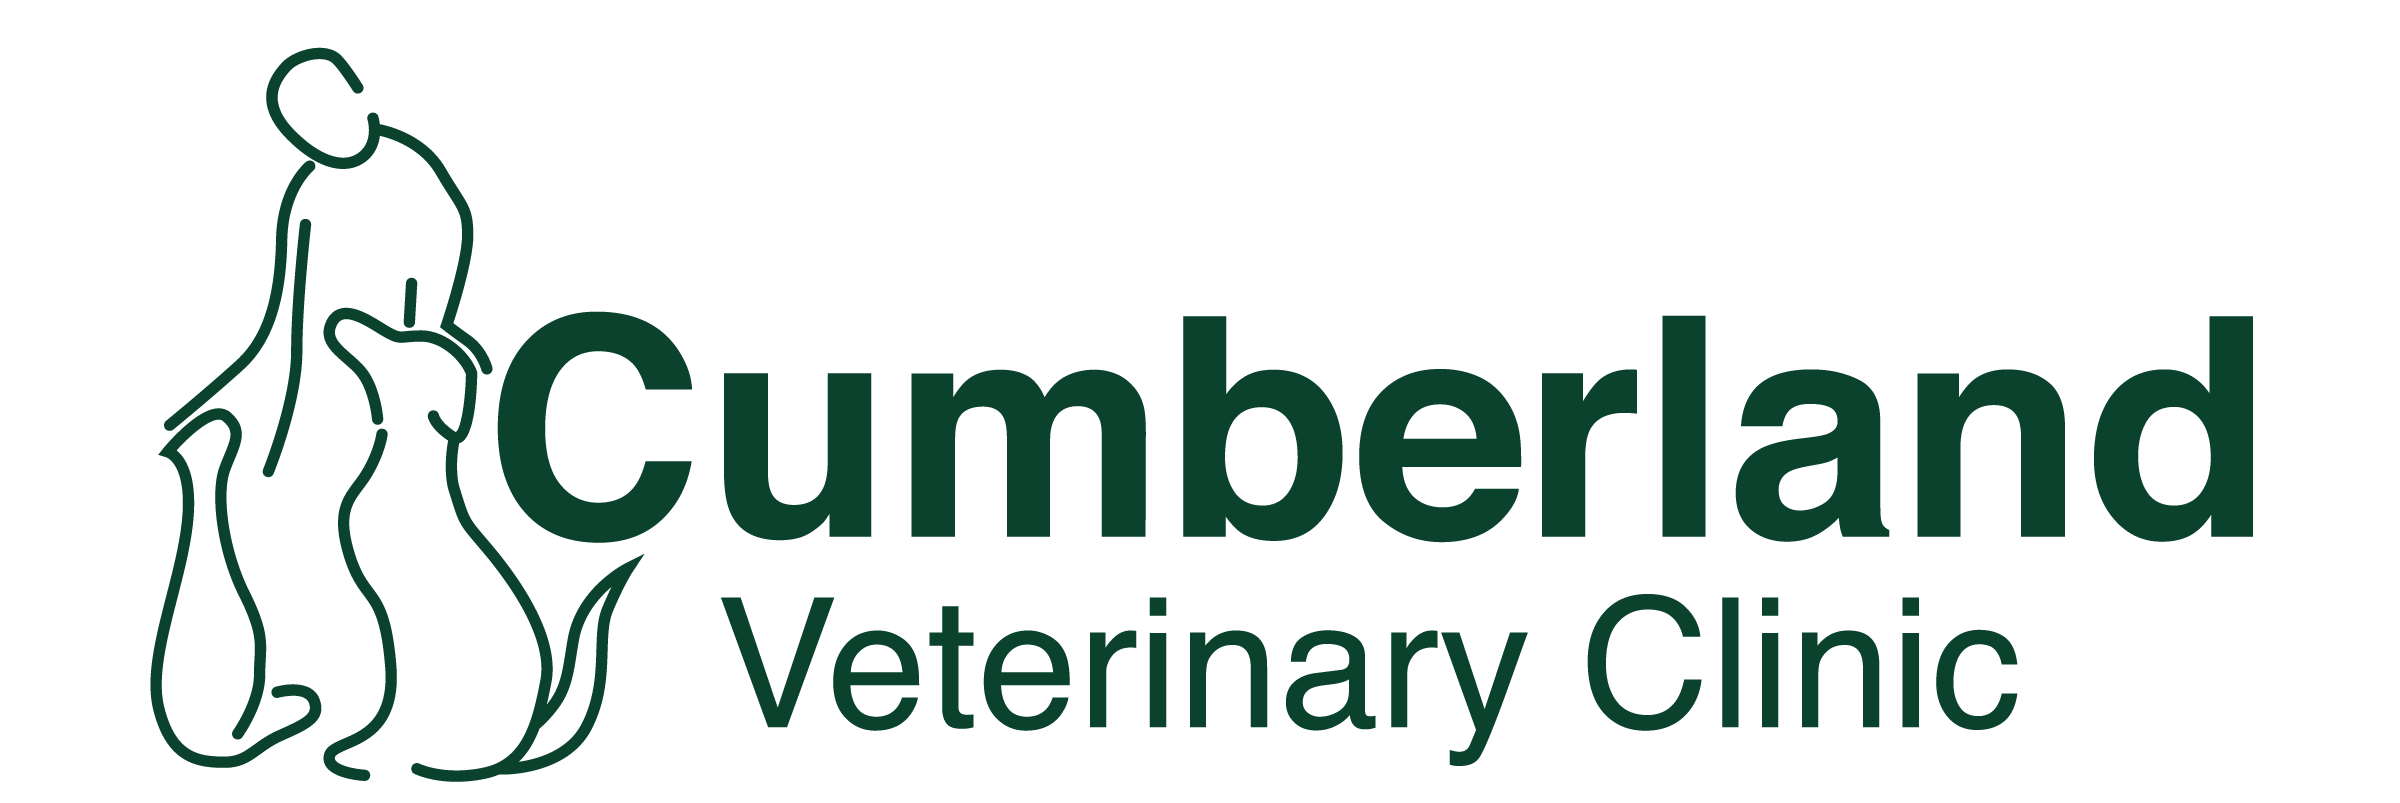 Logo of Cumberland Veterinary Clinic in Saskatoon